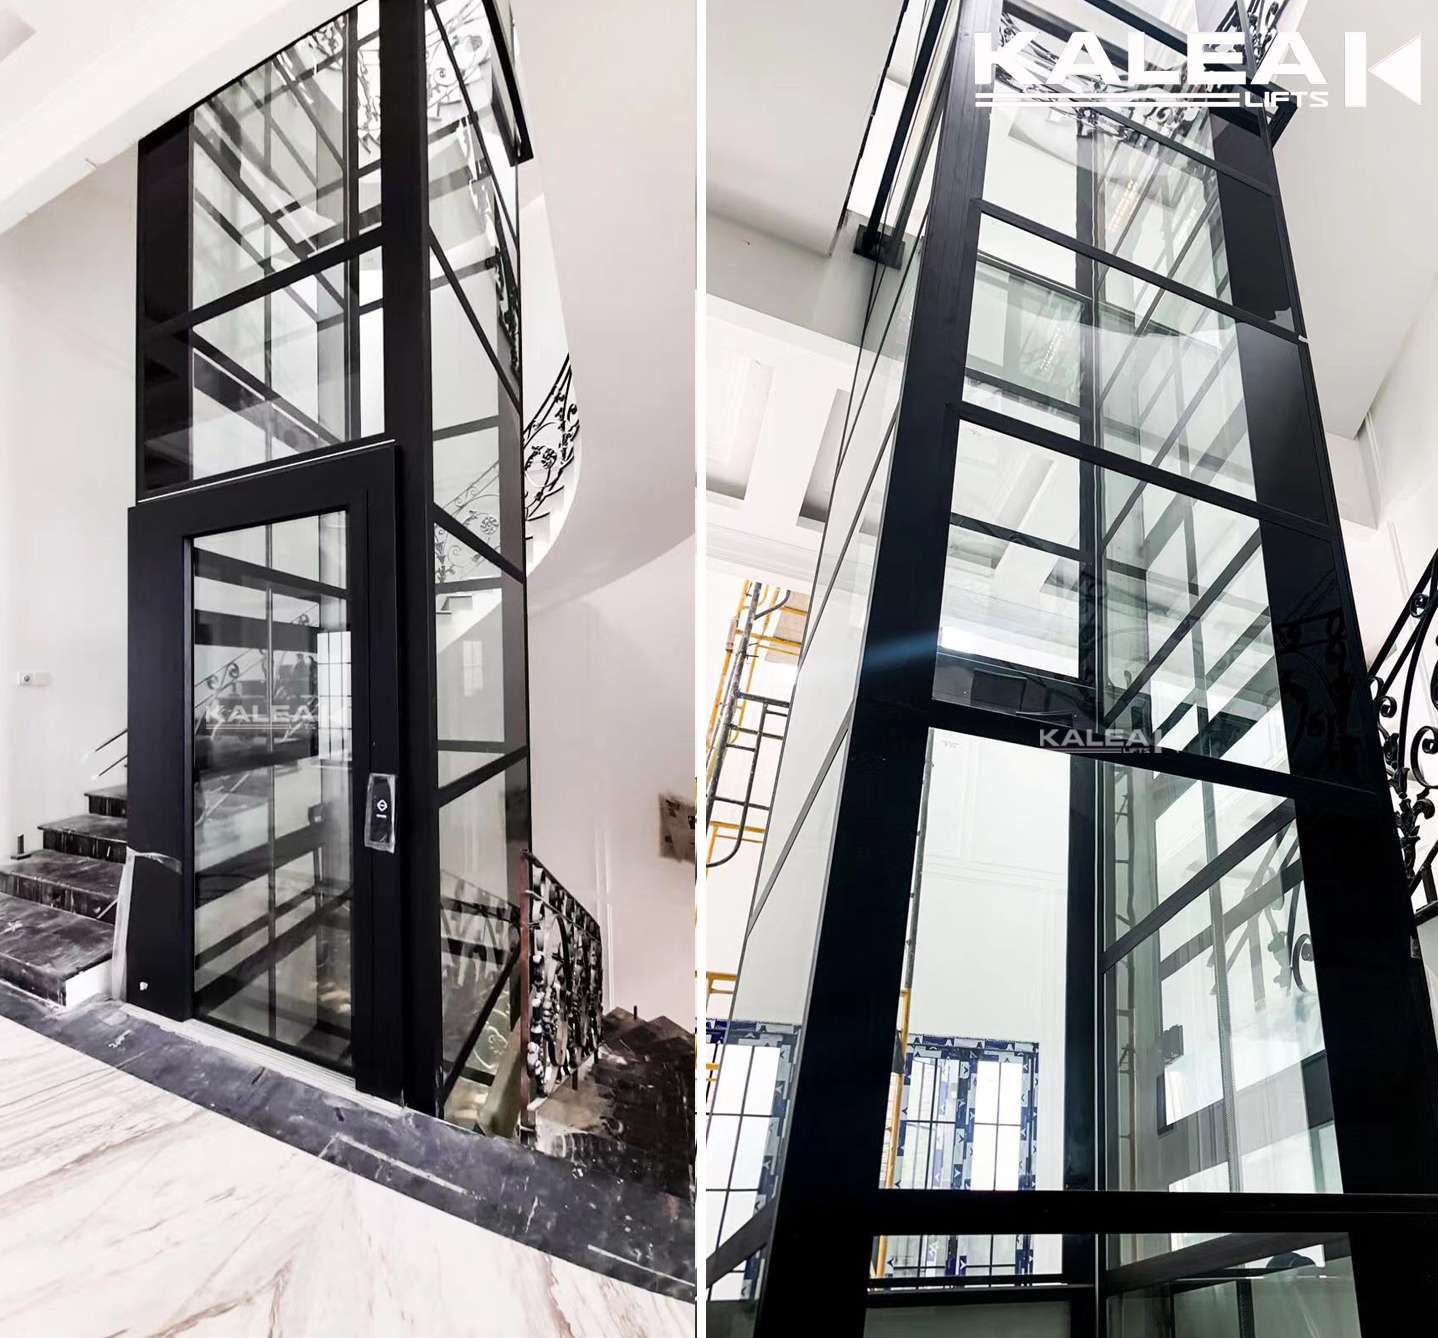 Lắp đặt thang máy gia đình 3 tầng với thiết kế 4 mặt kính an toàn hiện đại